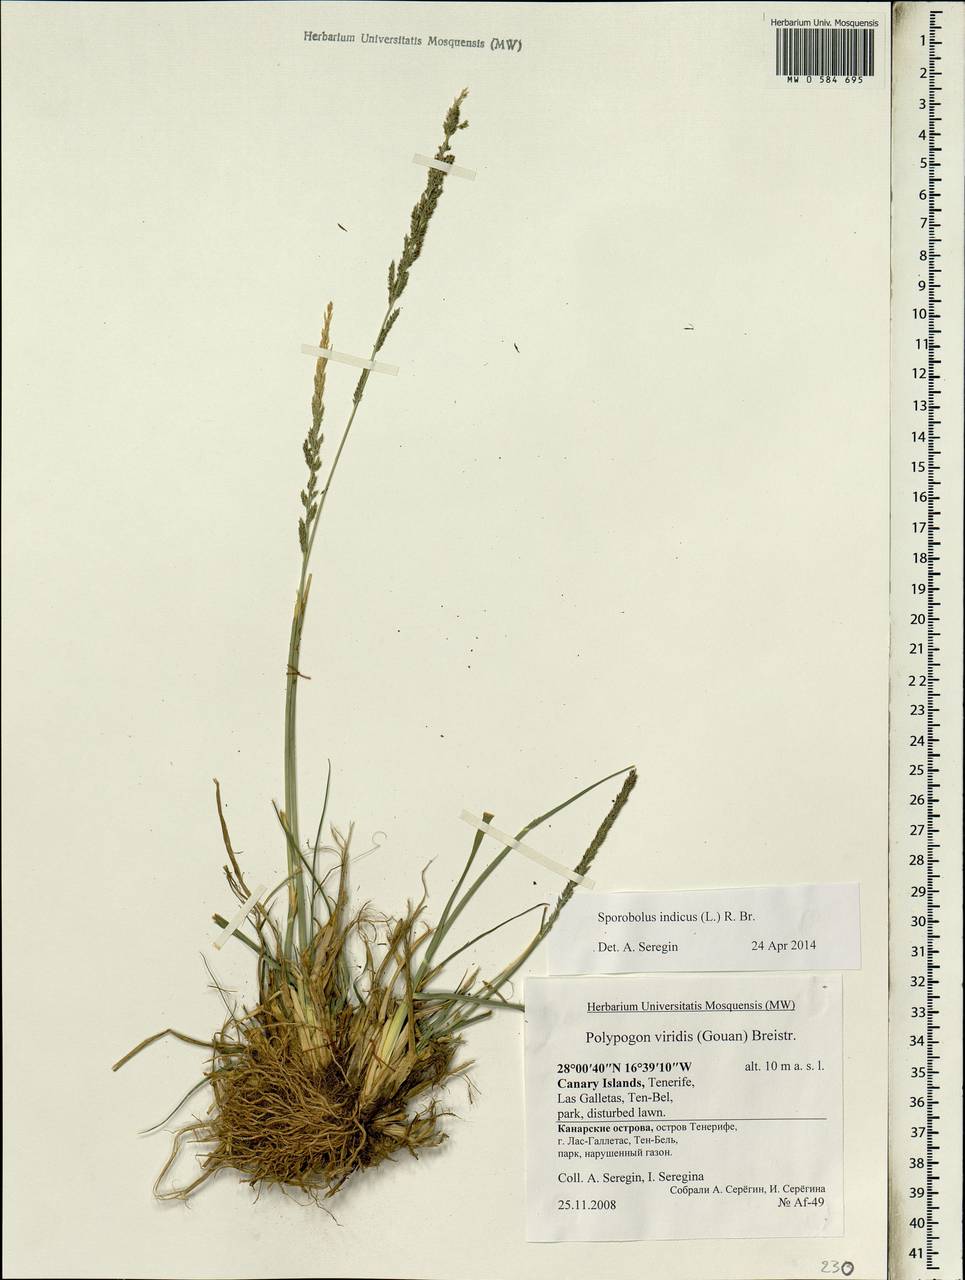 Sporobolus indicus (L.) R.Br., Africa (AFR) (Spain)